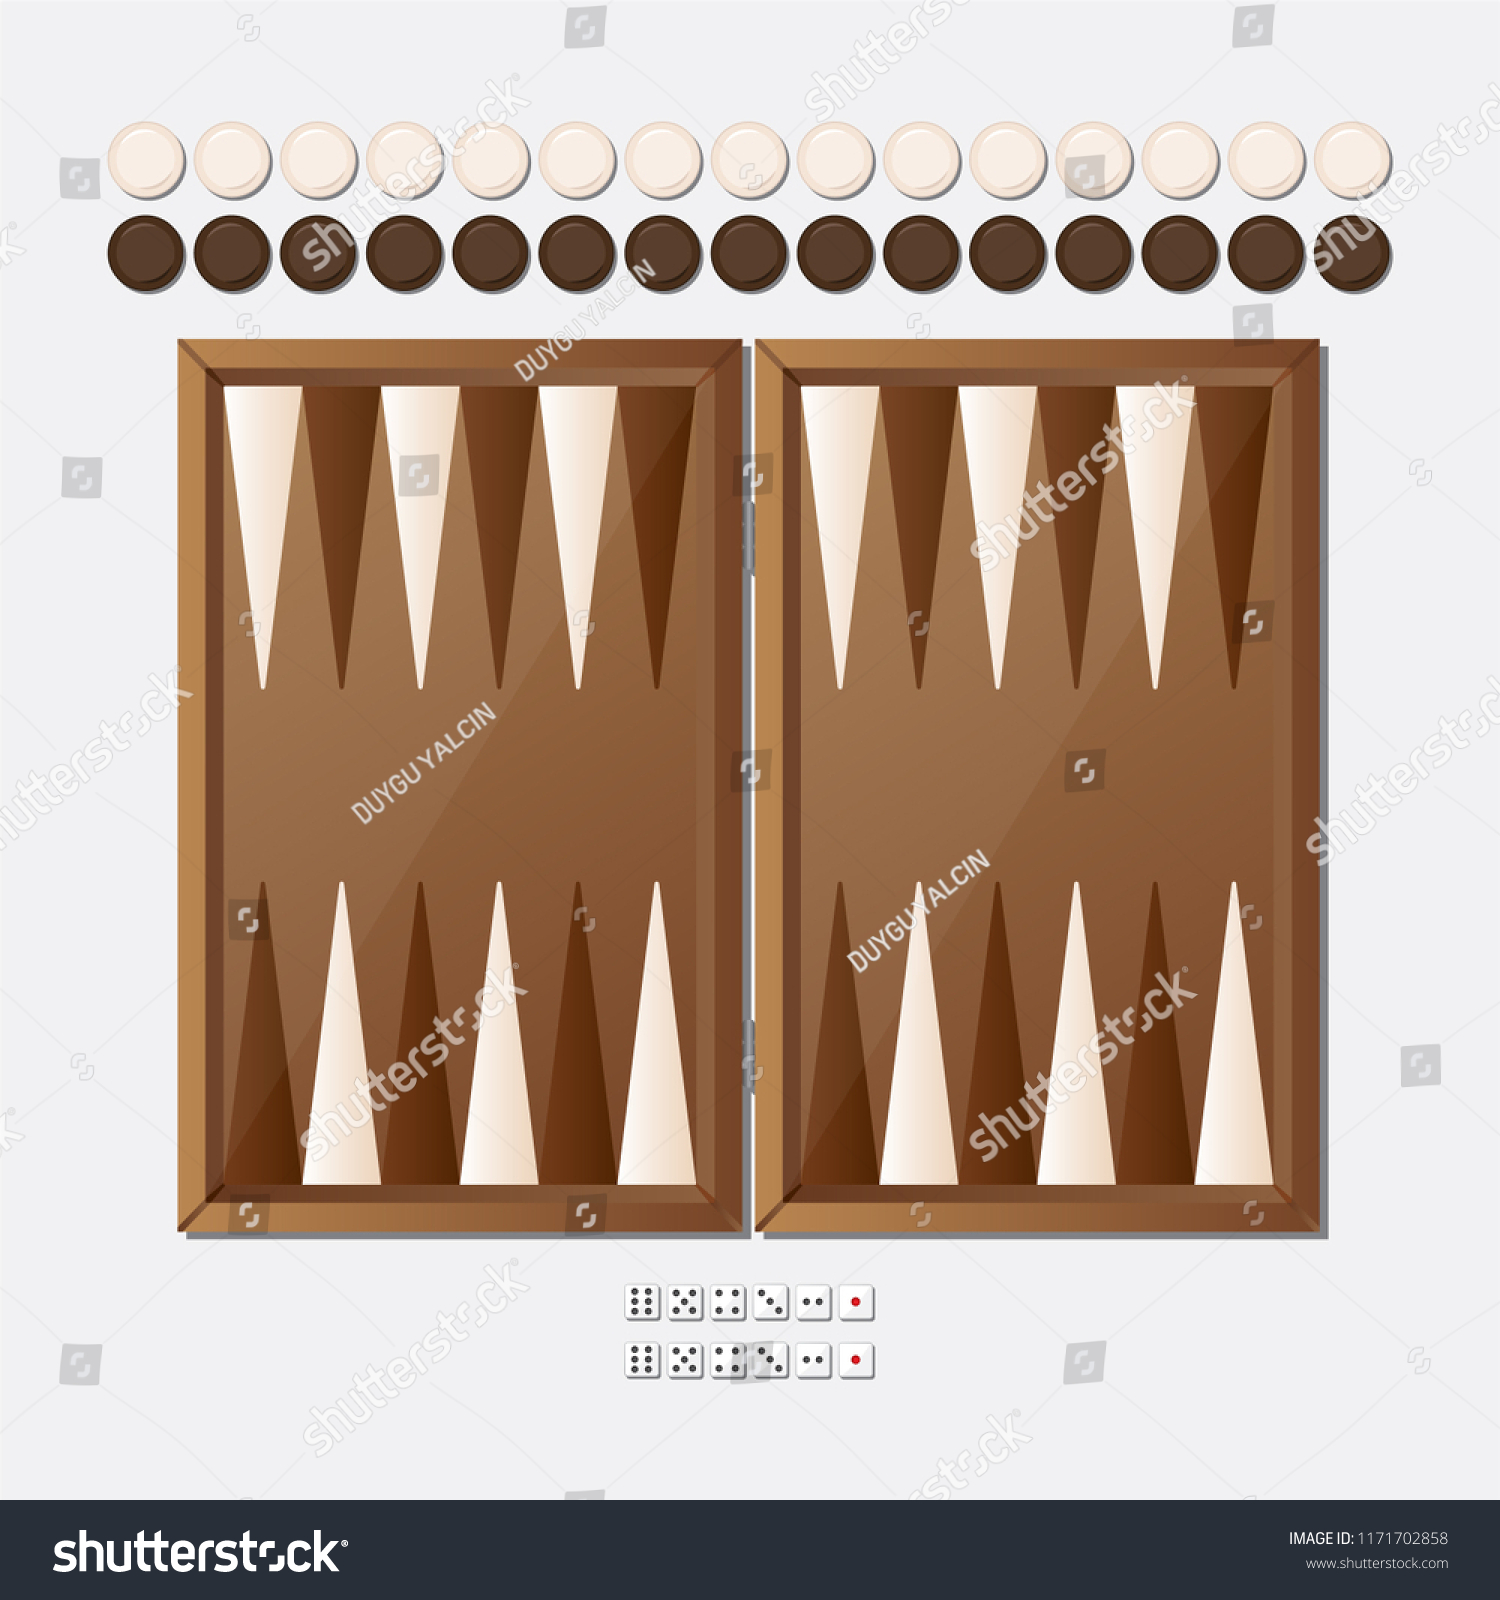 SVG of 
Backgammon Board Vector svg